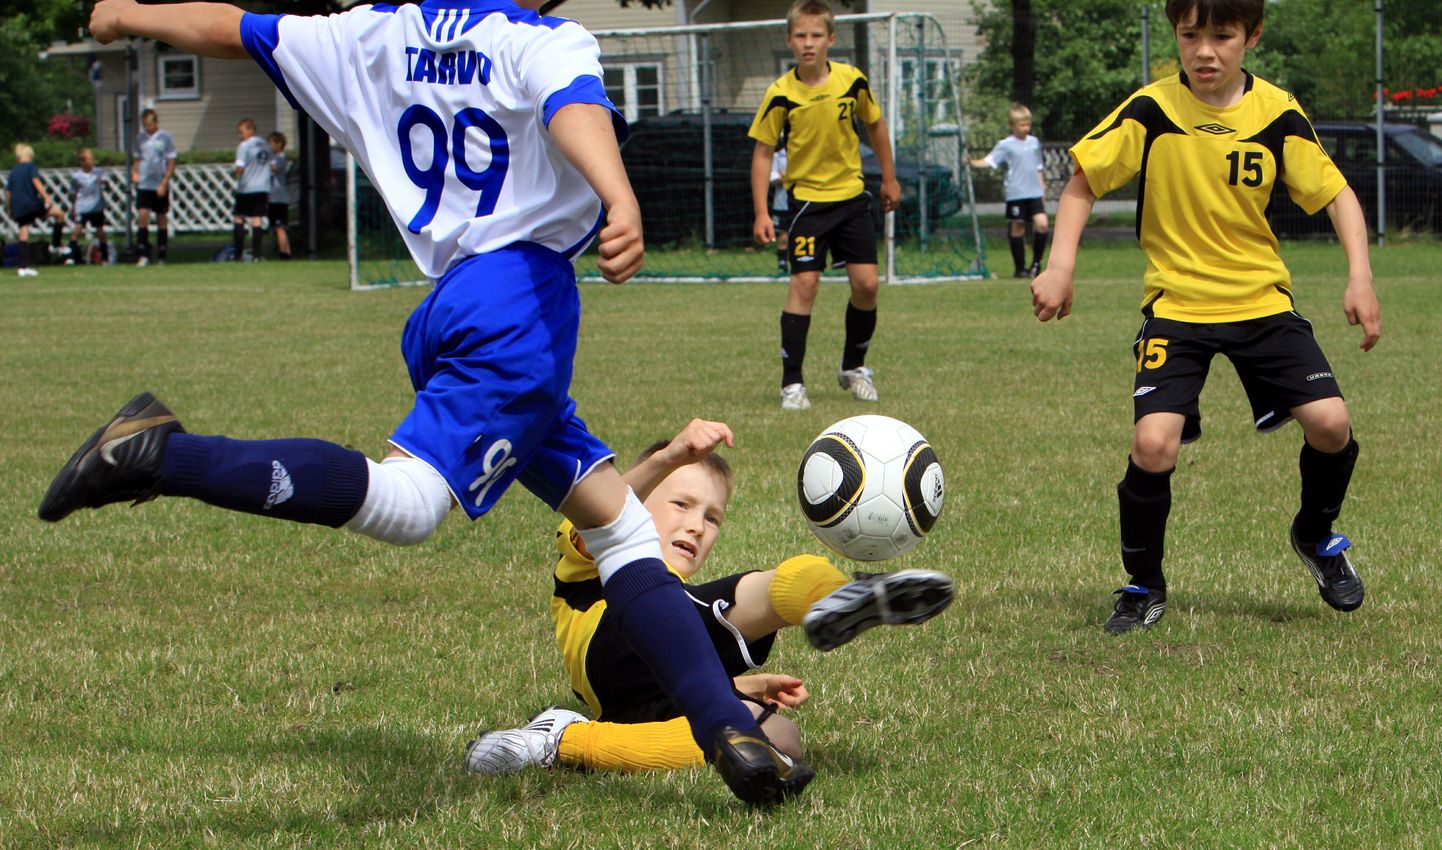 Noored jalgpallurid möödunud aastasel turniiril Pärnu Summer Cup.